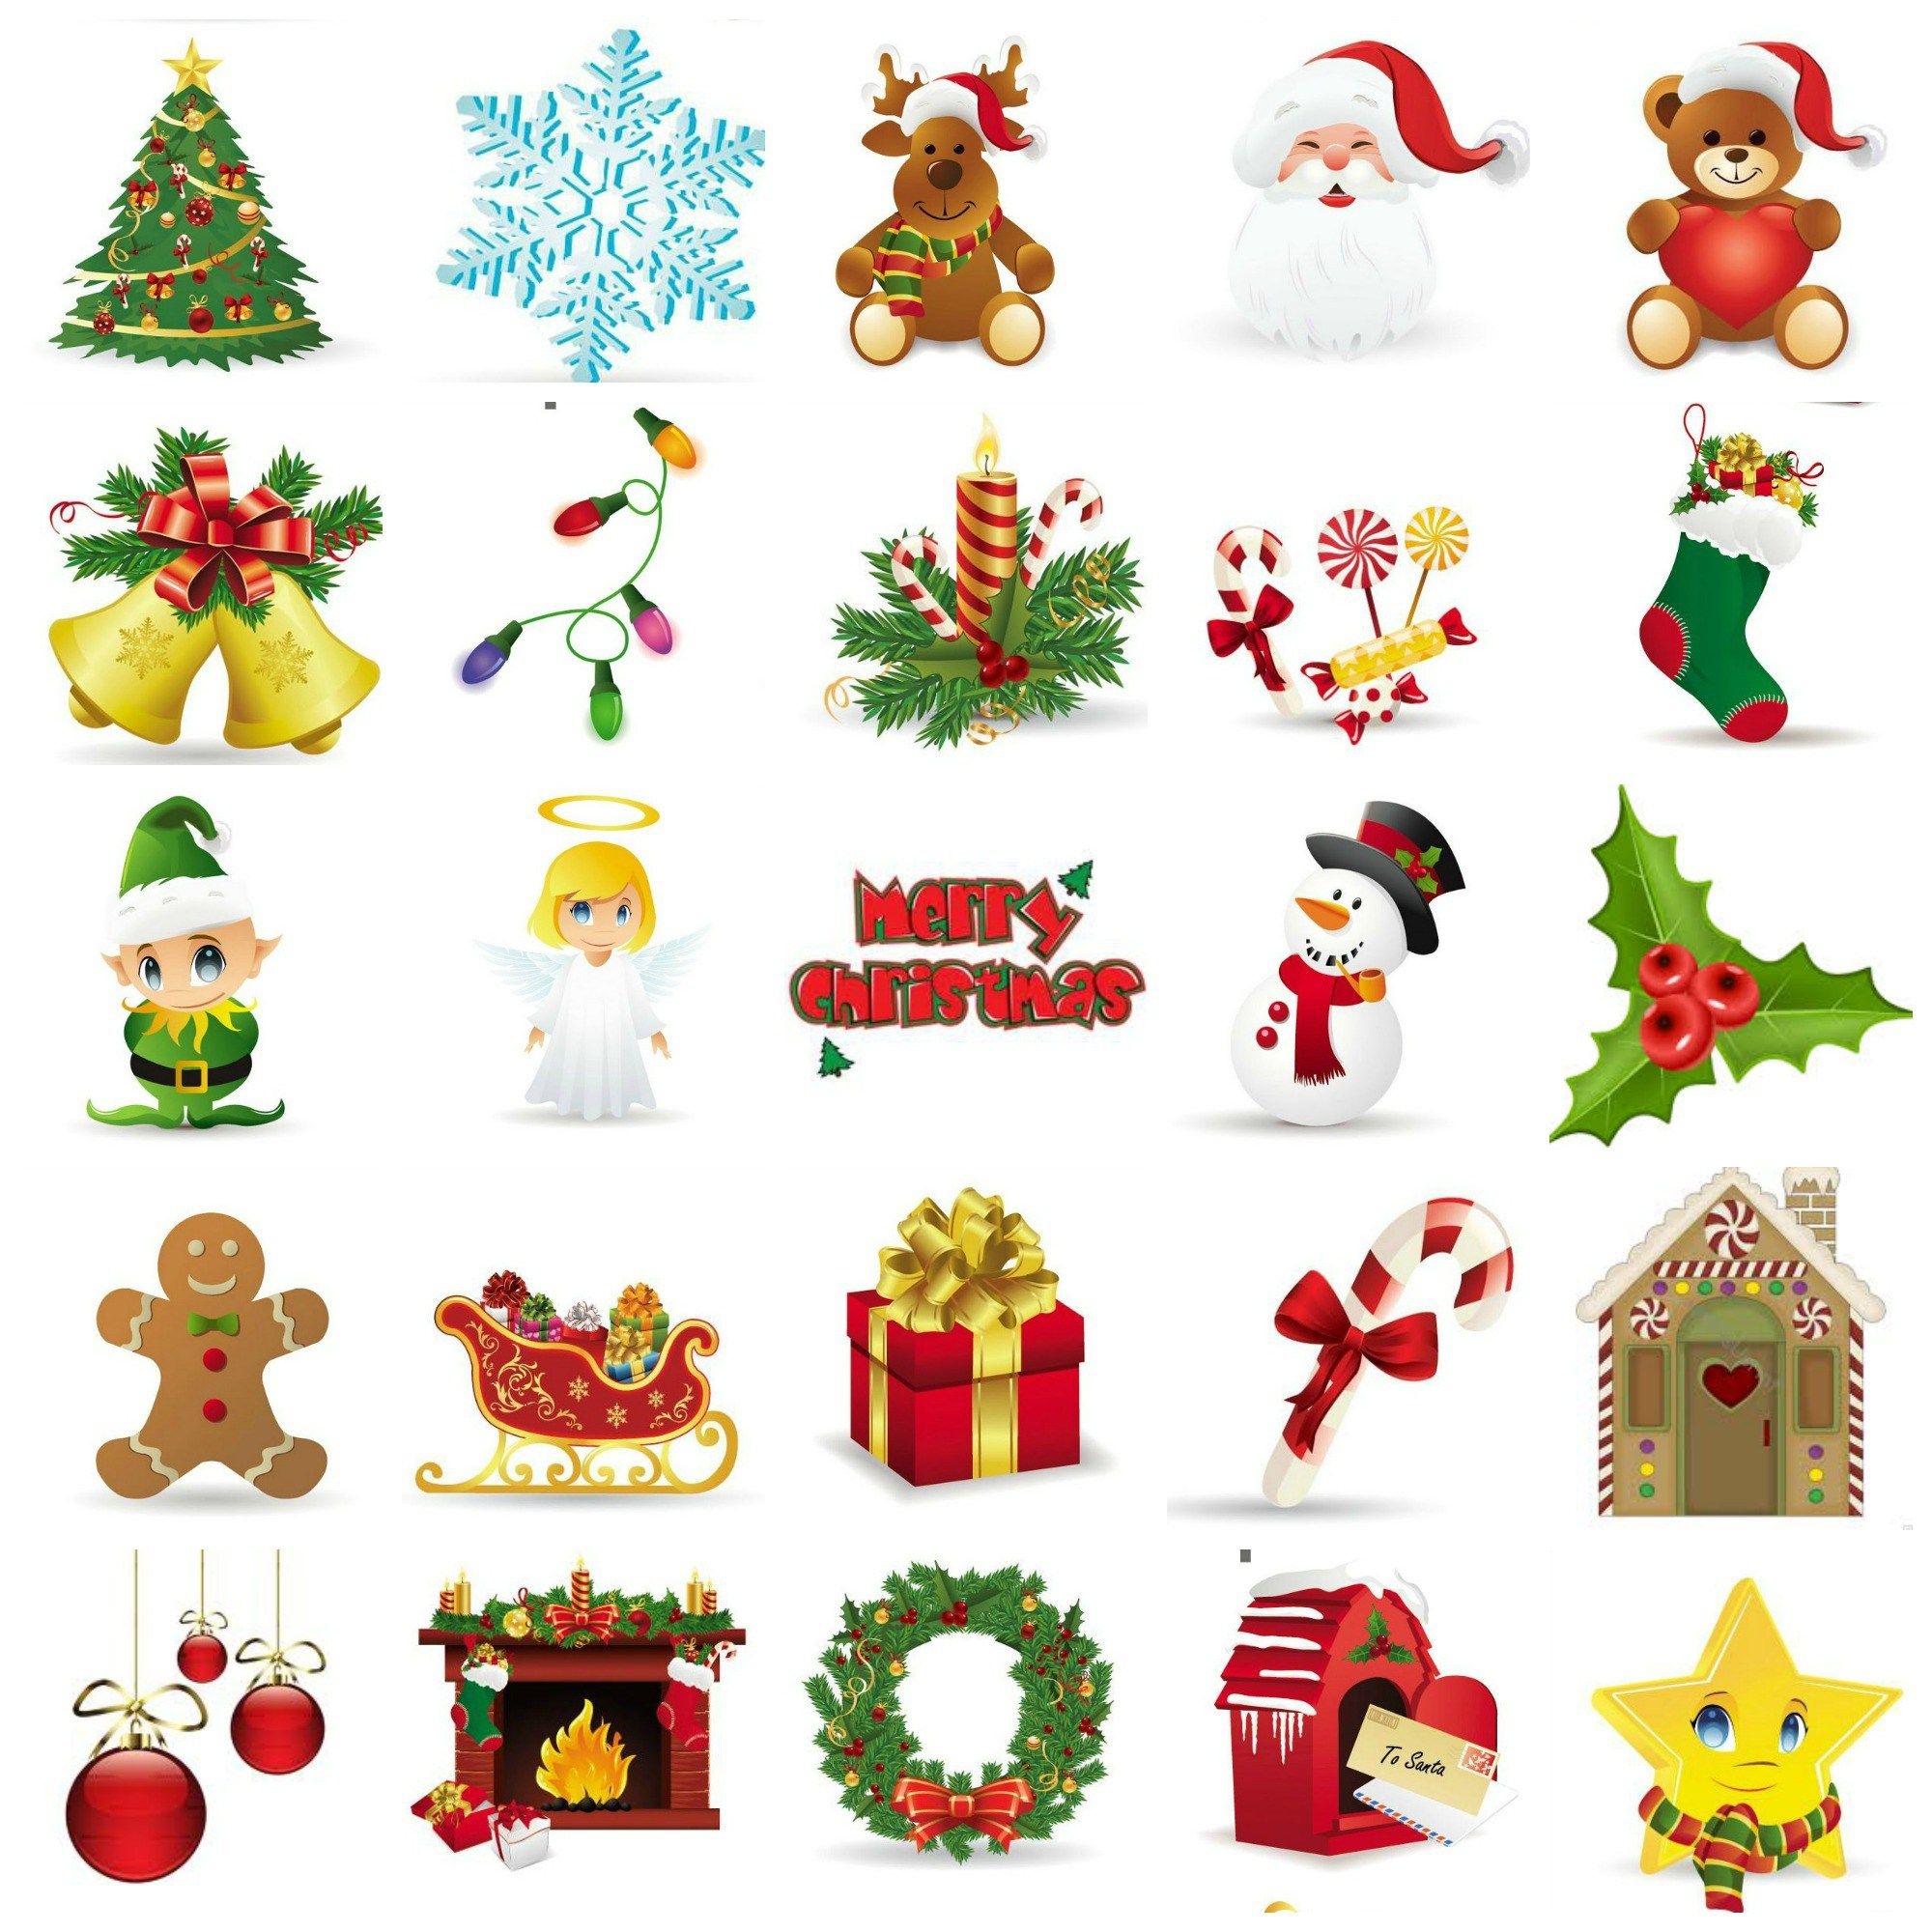 Christmas BINGO Free Printables Free Christmas Printables Christmas Clipart Free Christmas Stickers - Free Printable Christmas Clip Art